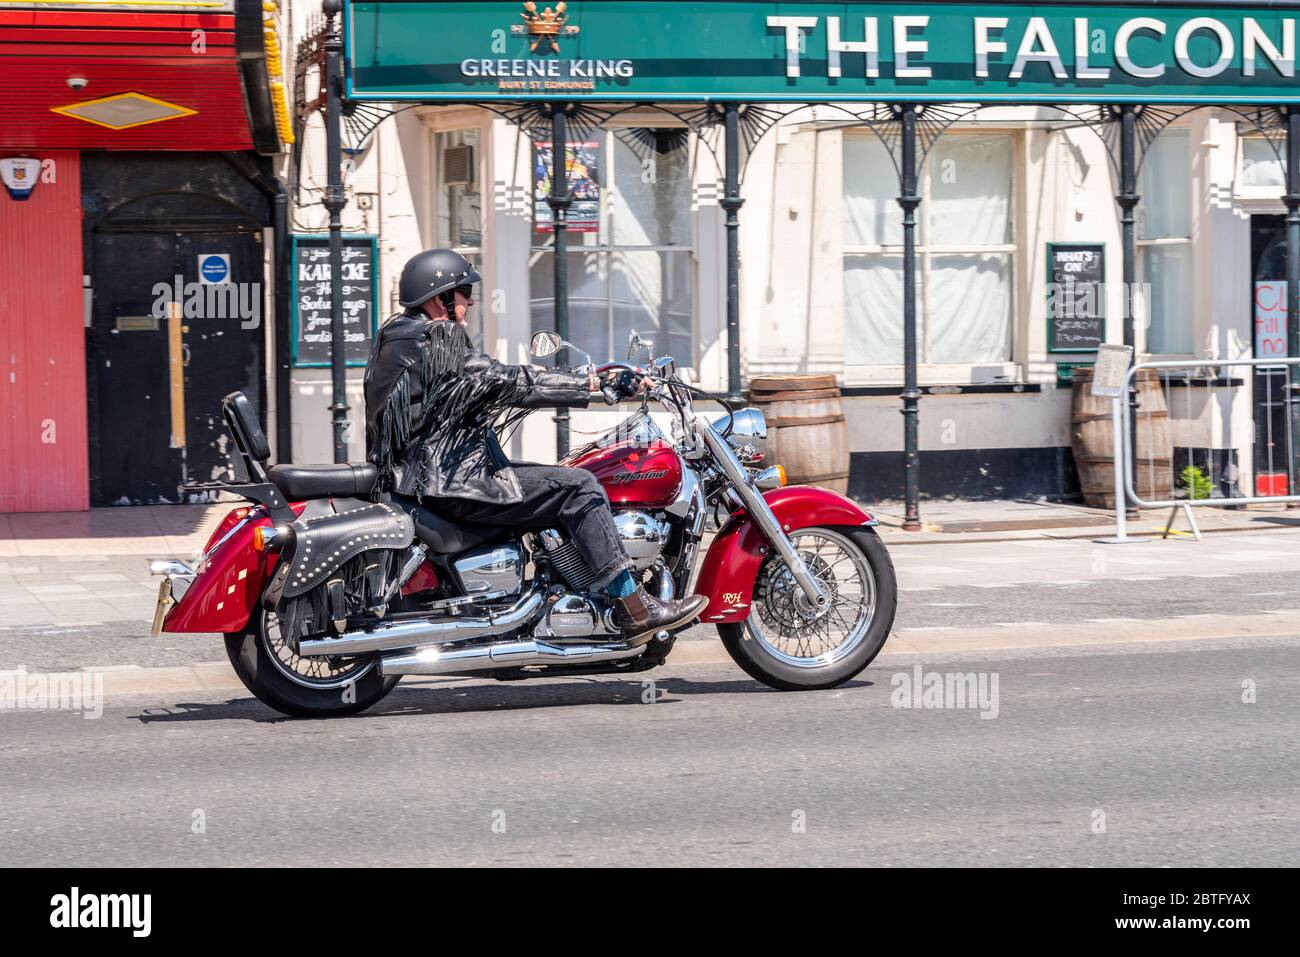 Honda Shadow 750 Motorrad fahren vorbei an geschlossenen Pub am 2020. Mai Feiertag Montag in Southend on Sea, Essex, Großbritannien, während der COVID-19 Pandemie Stockfoto